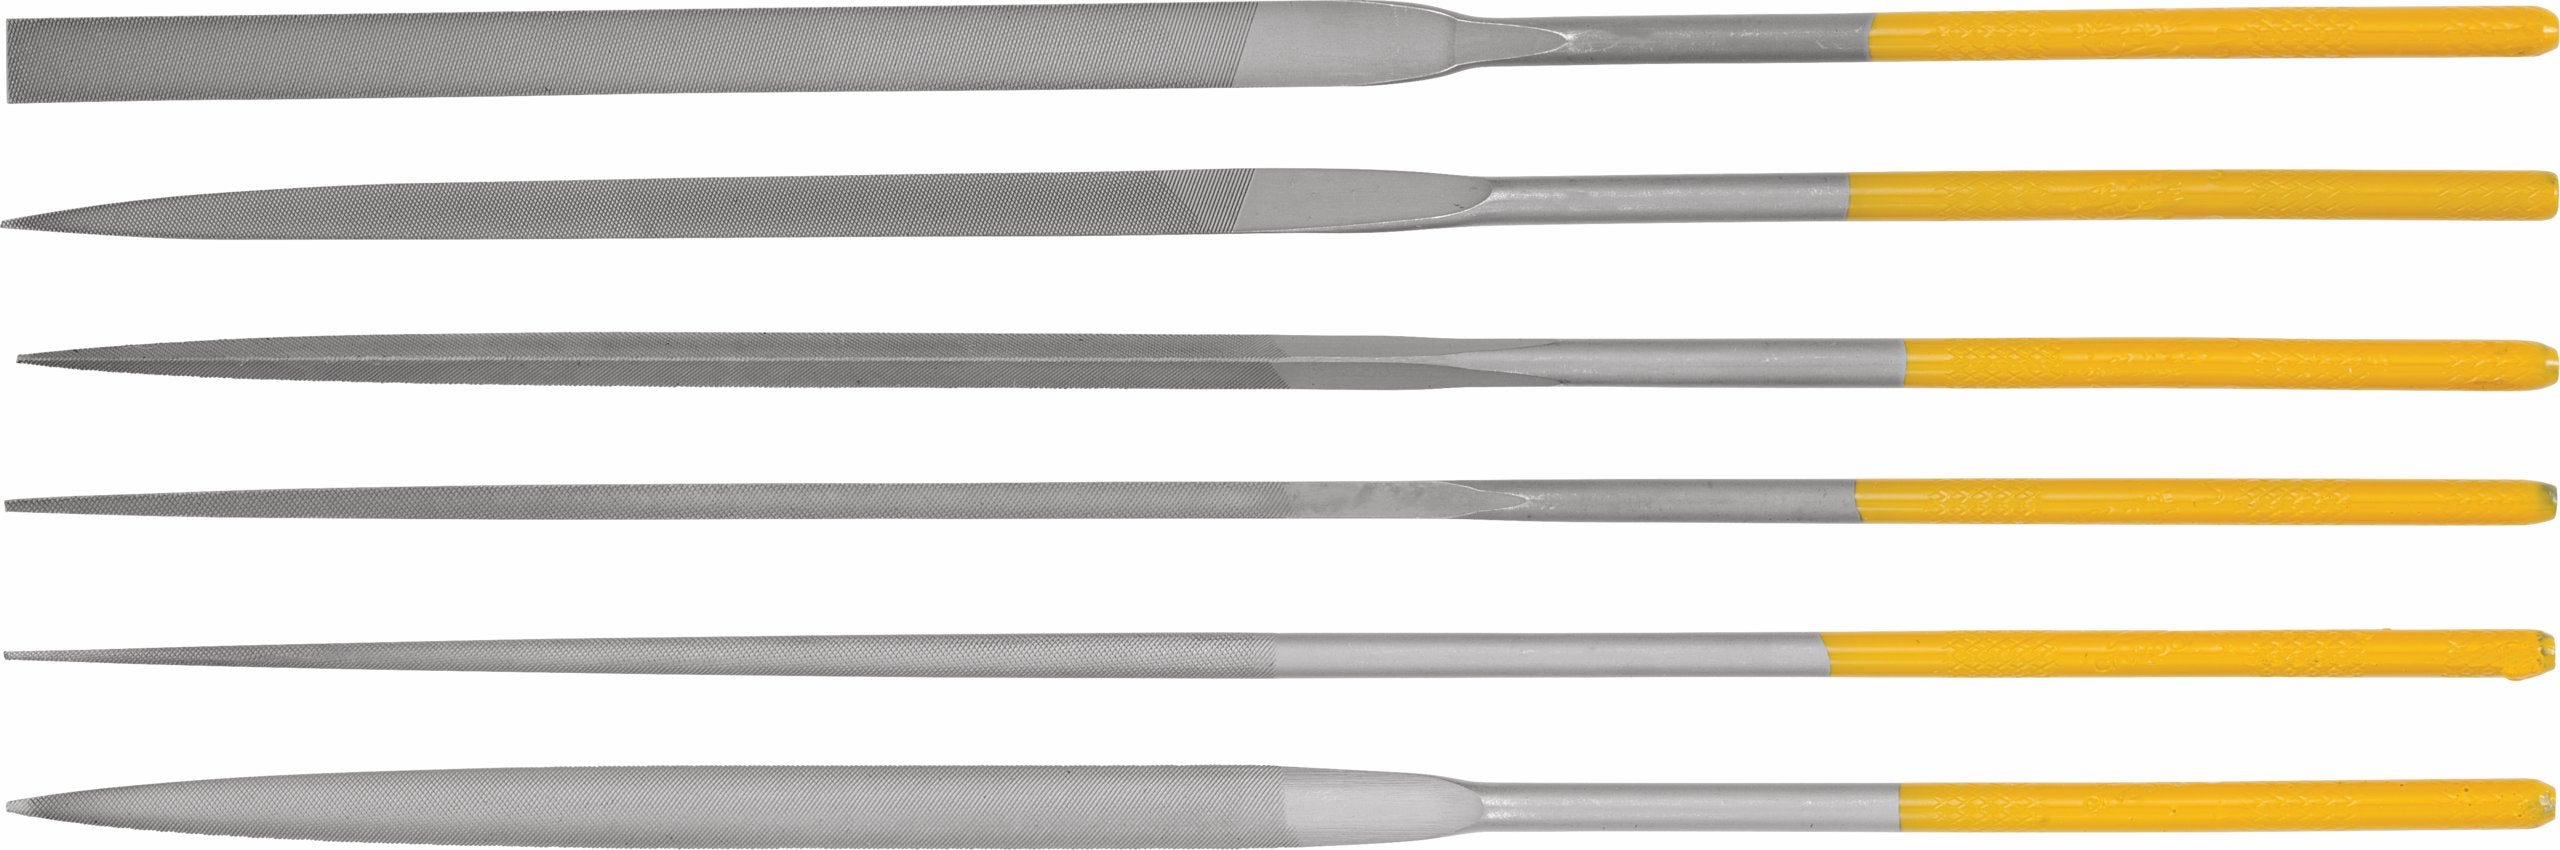 Valtitan Assorted Needle File Set